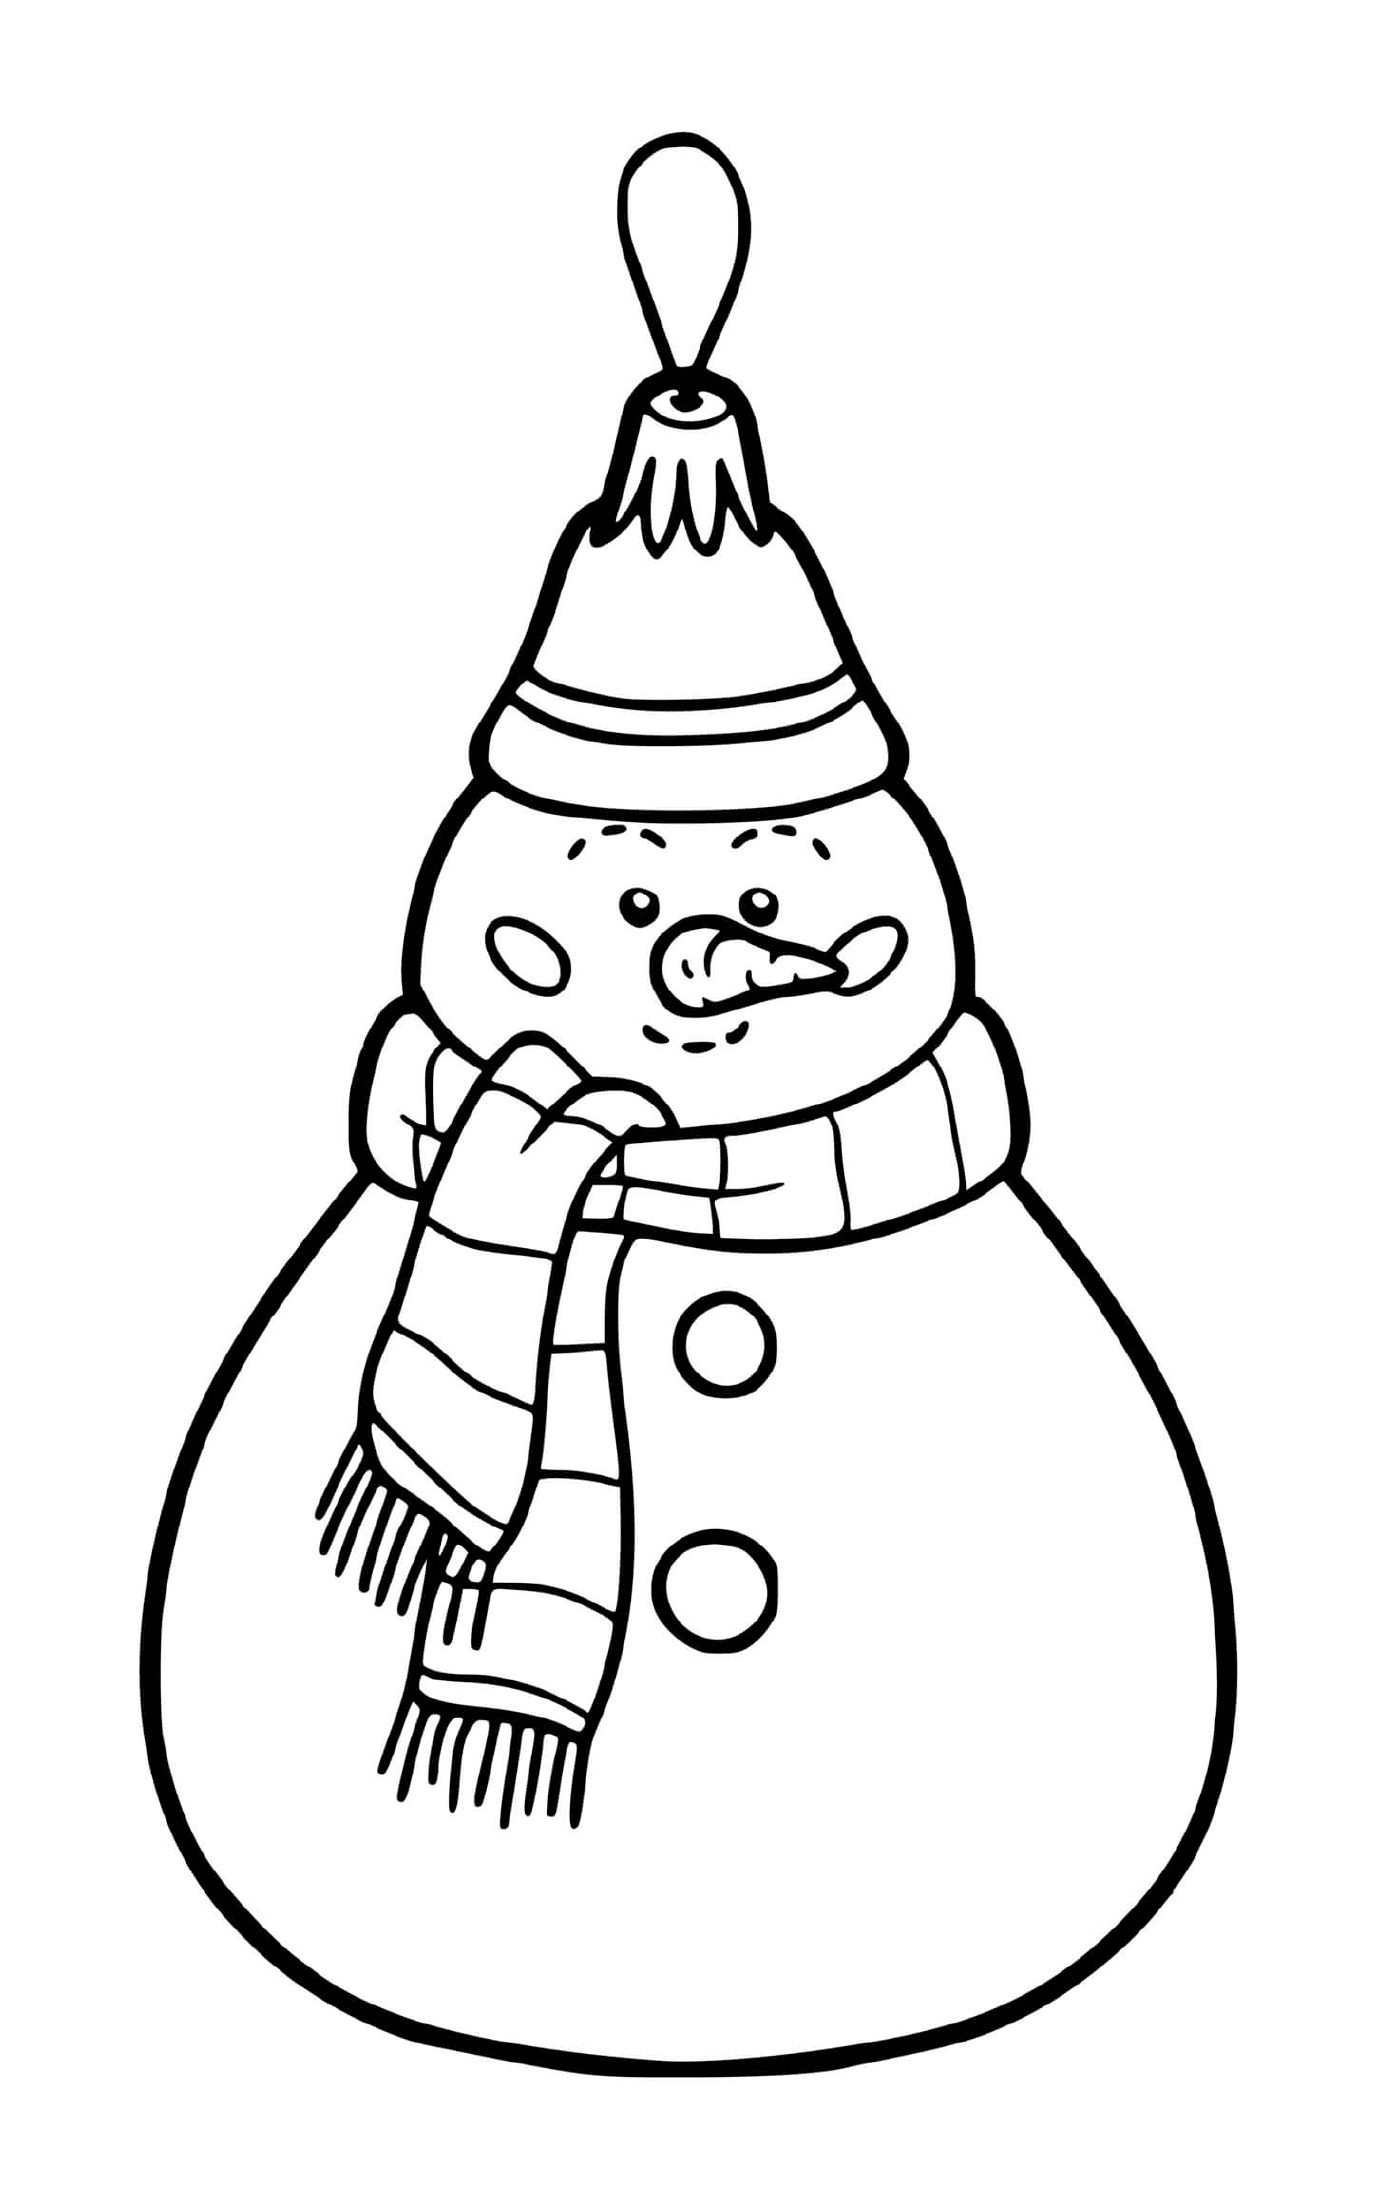 coloriage boule de noel en forme de bonhomme de neige pour sapin